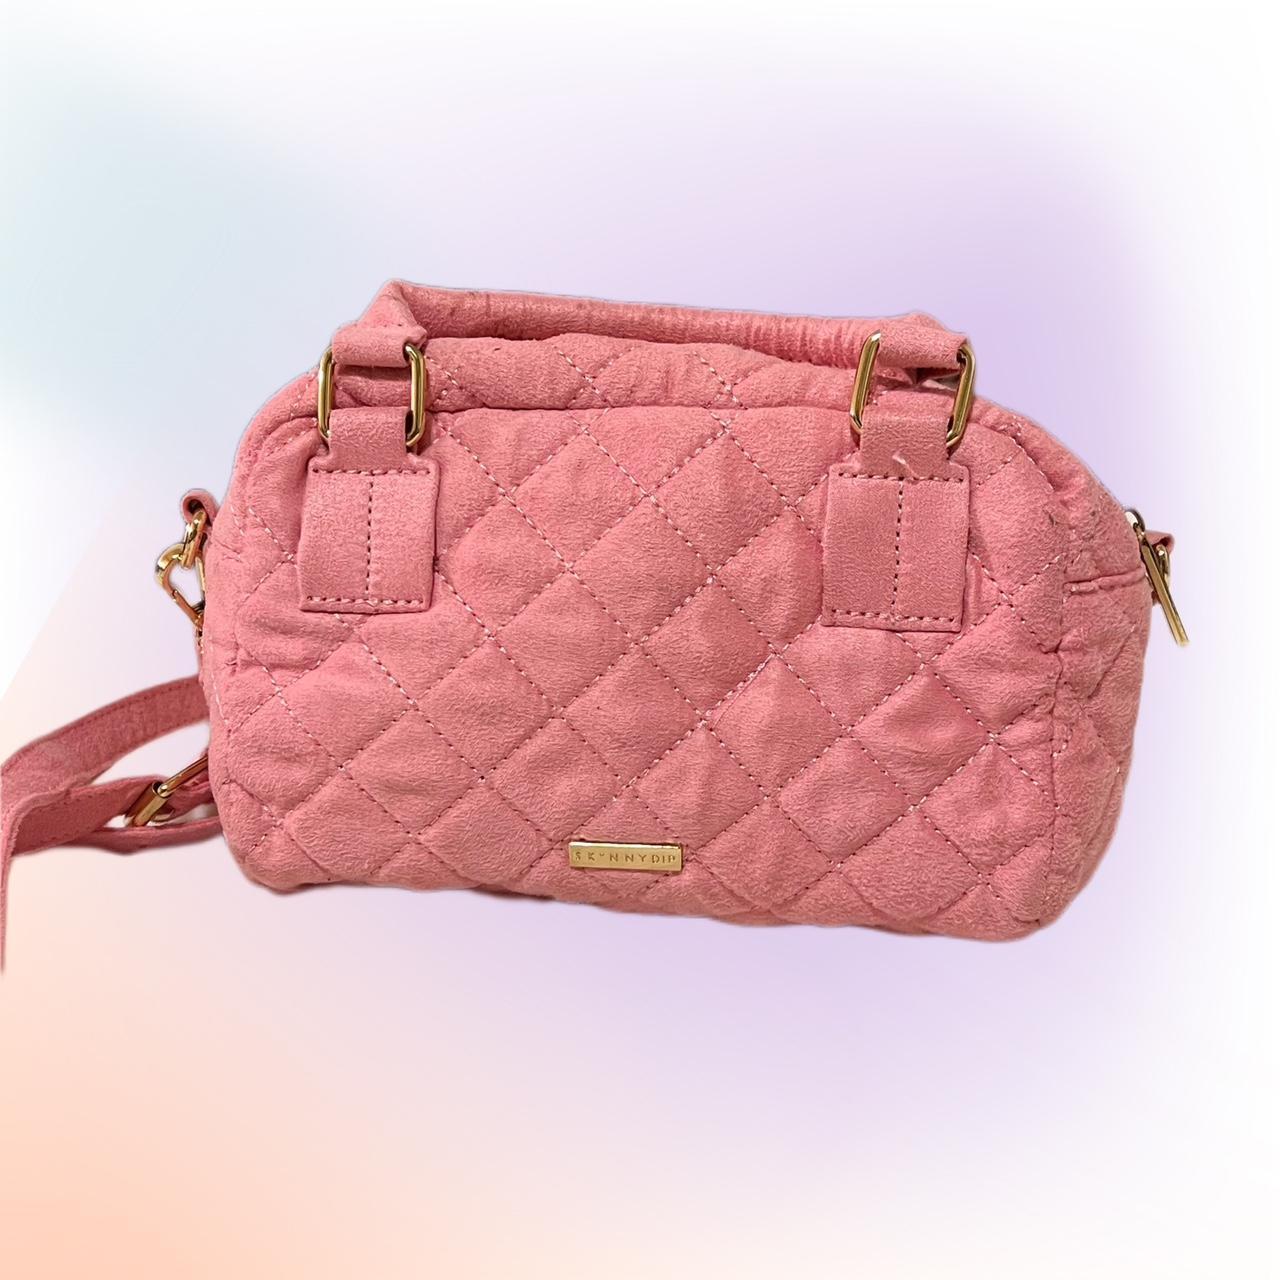 Skinnydip Women's Pink Bag (2)